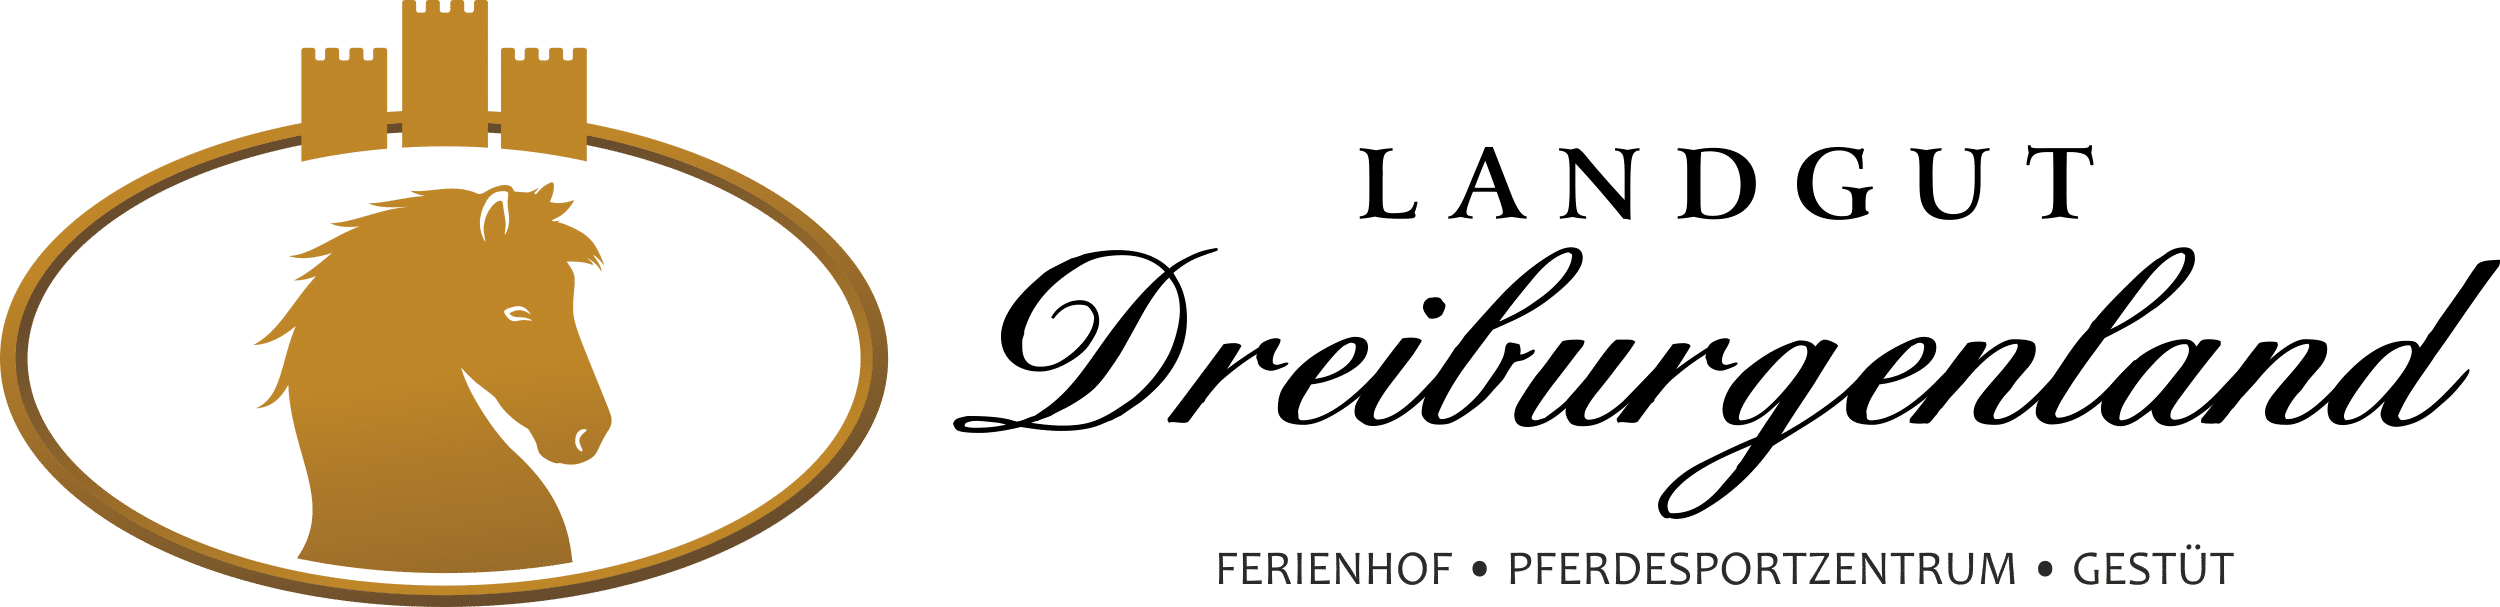 Ferienhof, Pferdesportzentrum und Gestüt "Landgut Dreiburgenland" | Reiterhof im Bayerischer Wald